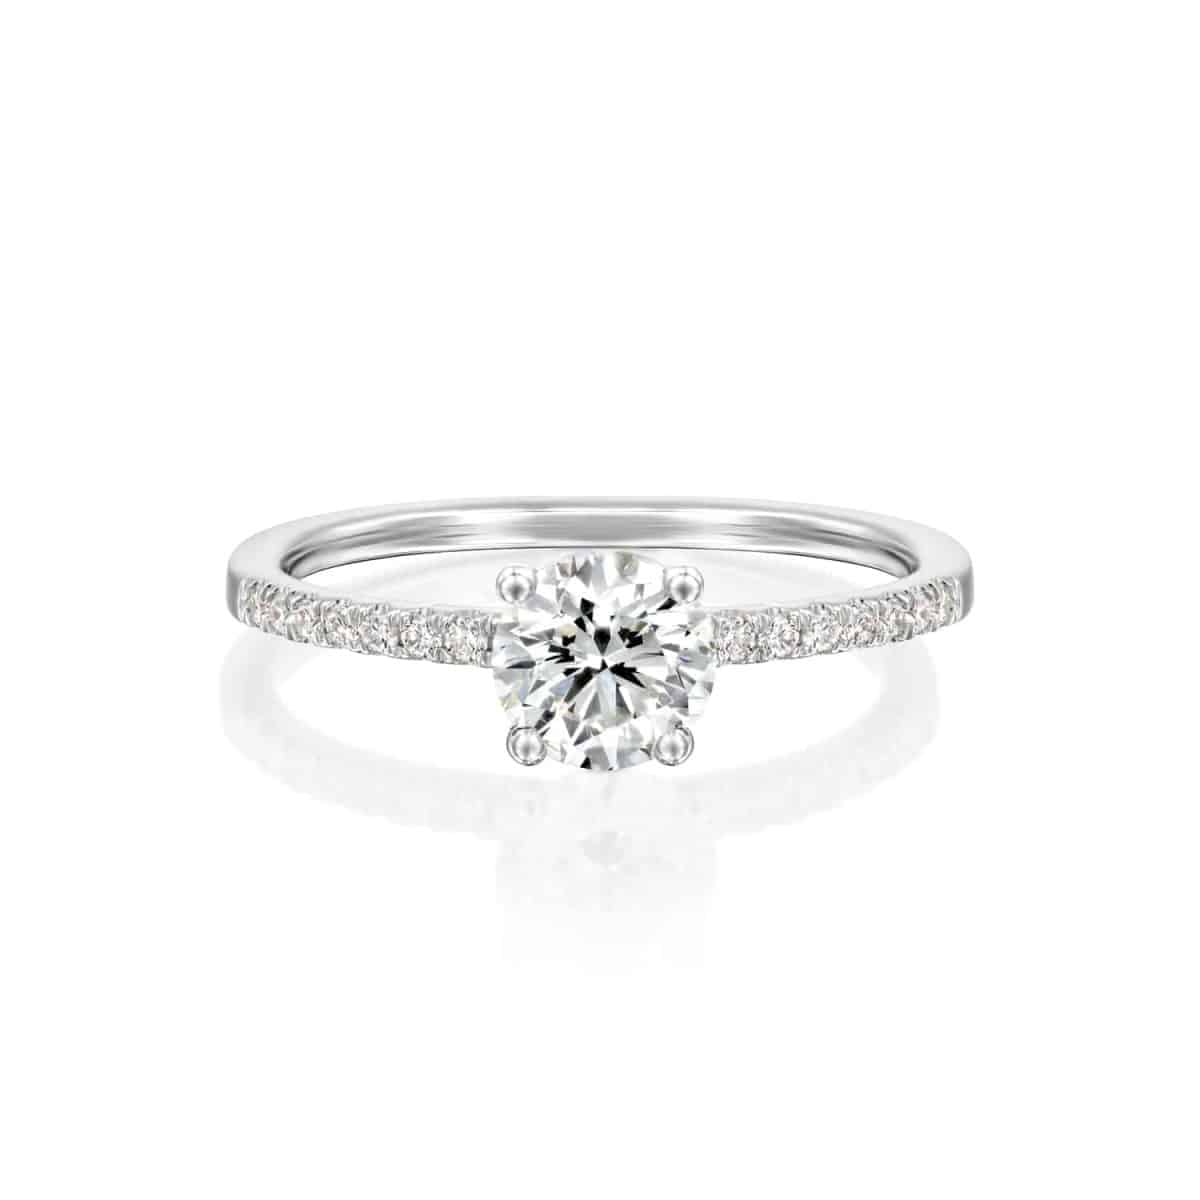 "Carol" - White Gold Lab Grown Diamond Engagement Ring 0.70ct. - laying